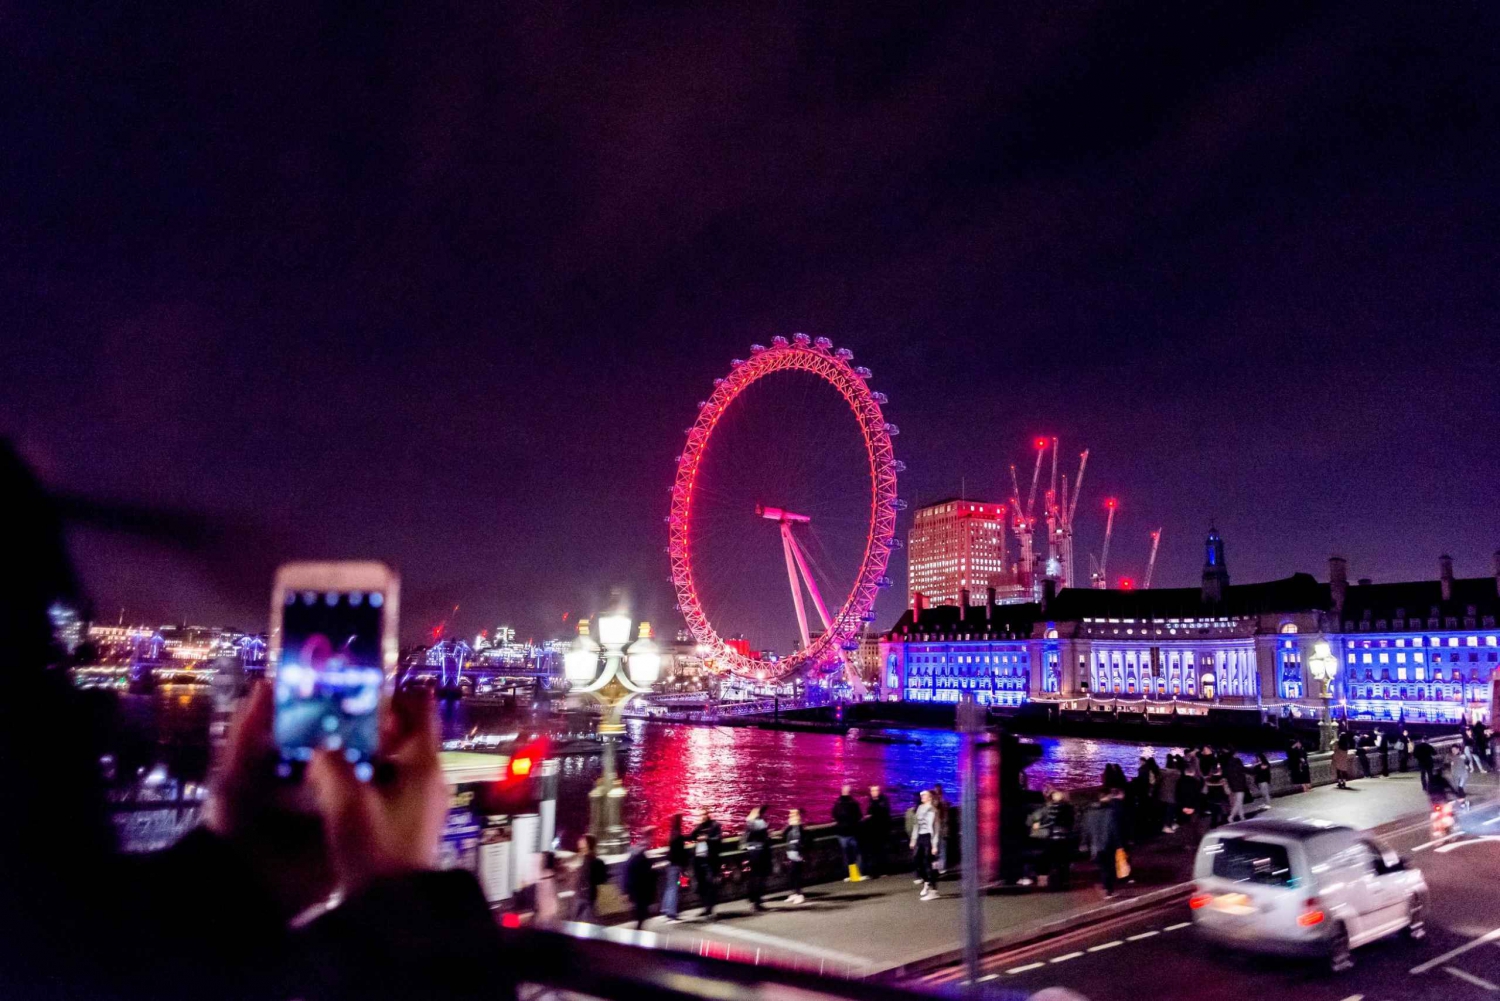 Londres : Visite touristique nocturne en bus à toit ouvert